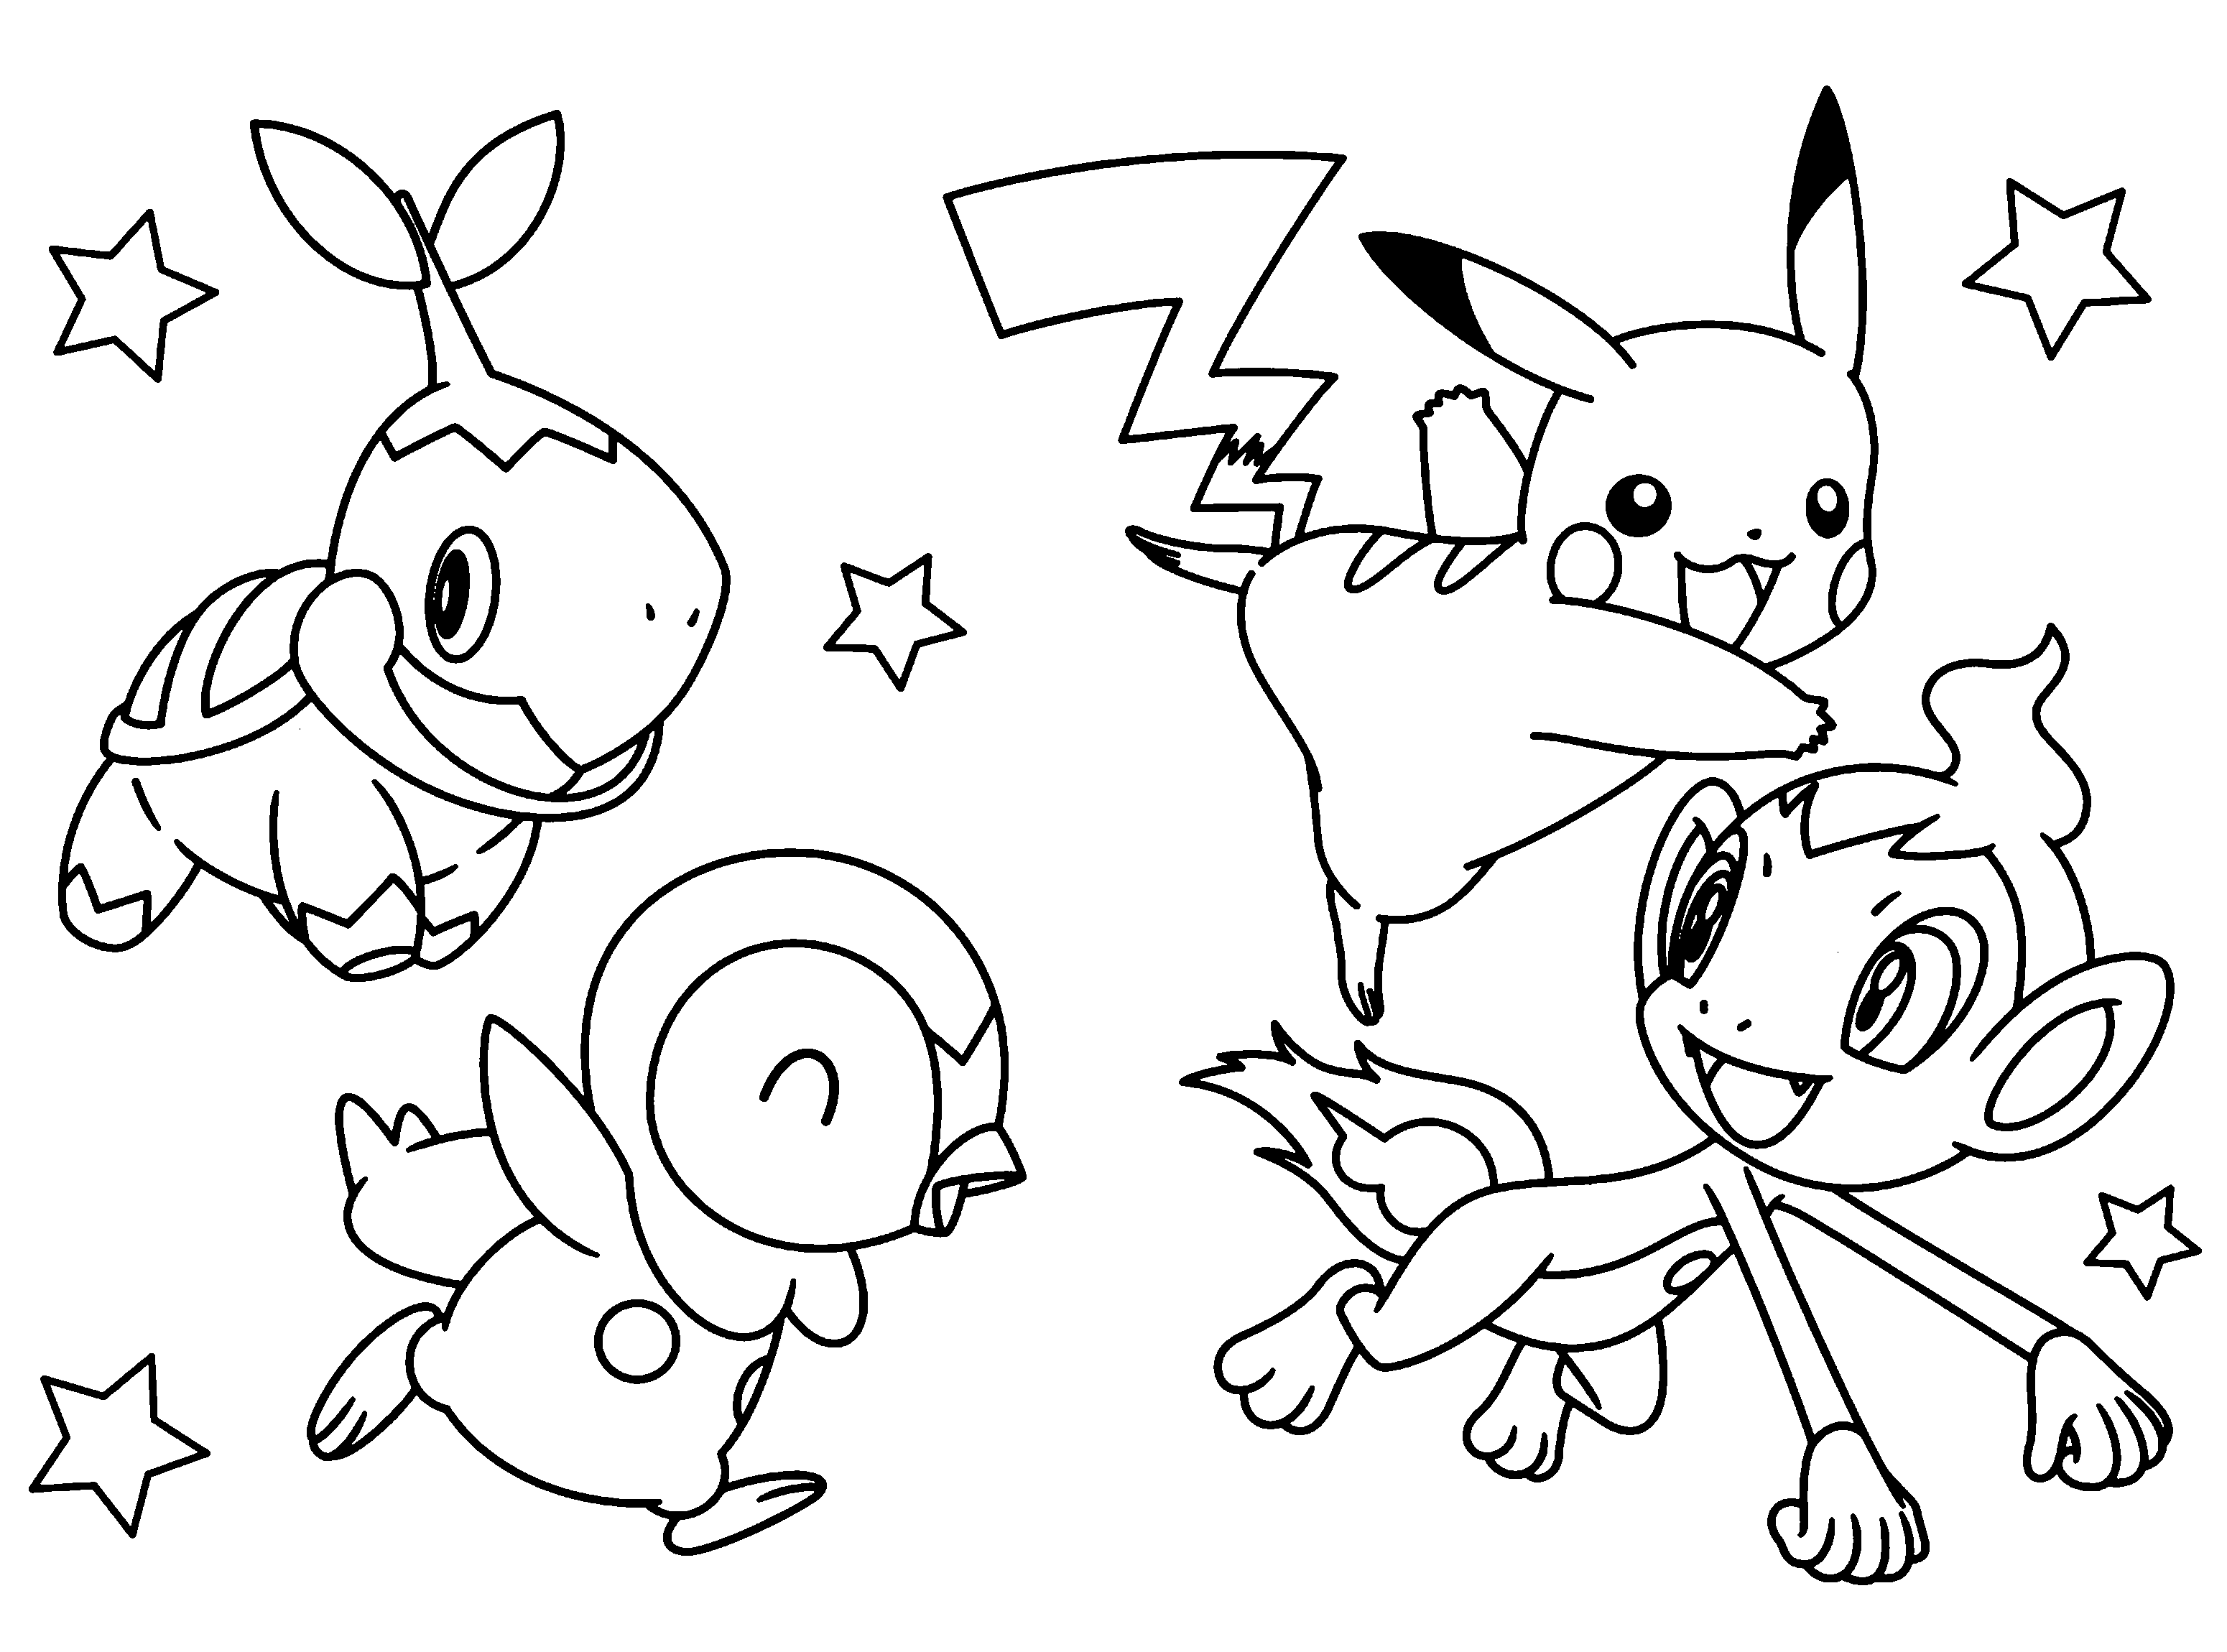 Pikachu et quelques créatures amies